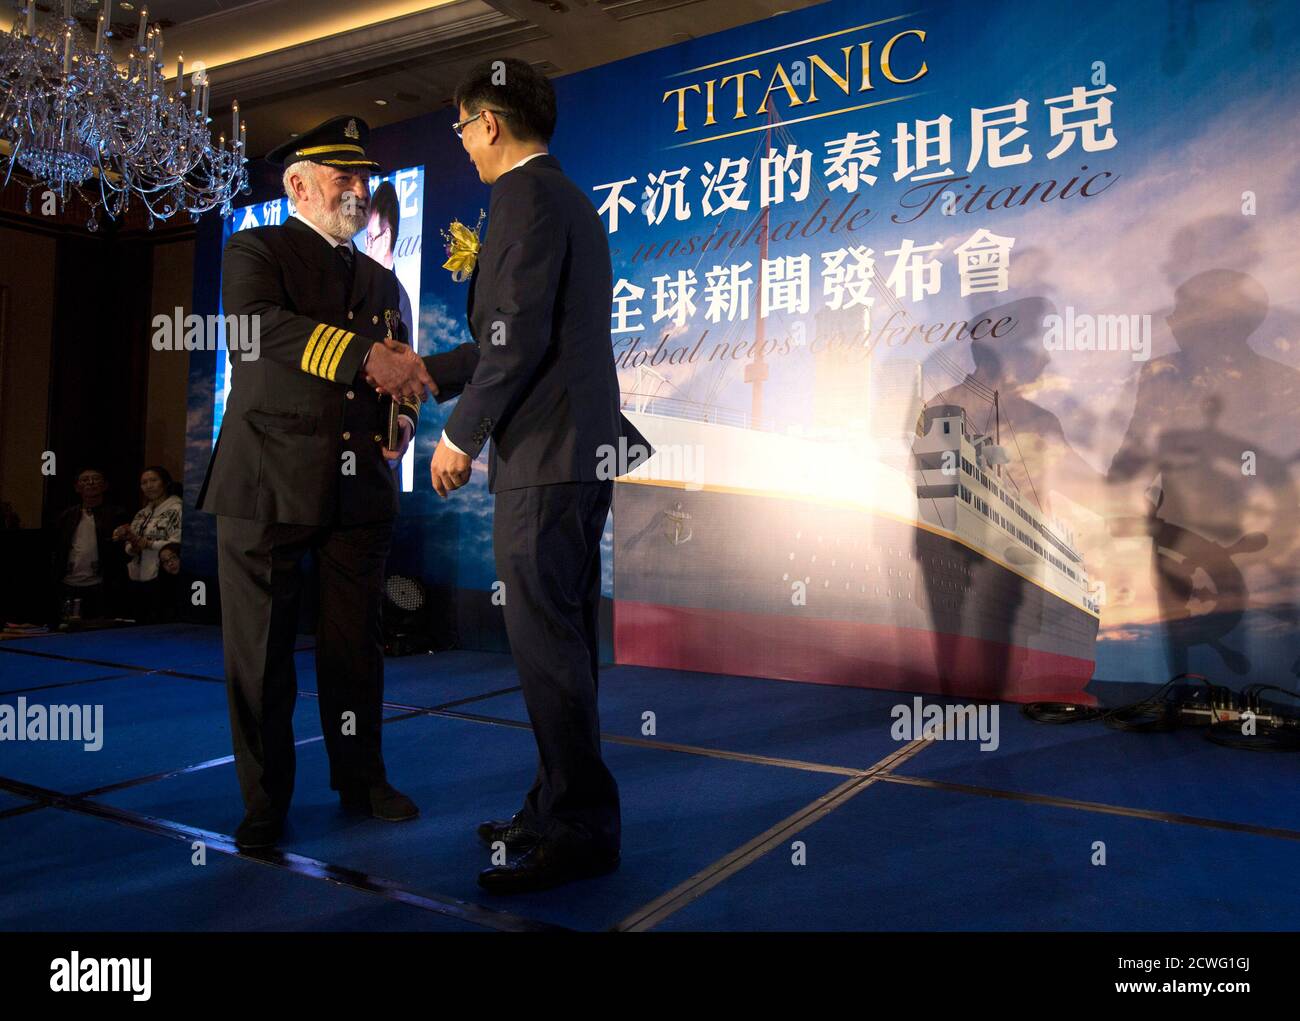 Китайская национальная химическая инженерная. Китайский Титаник Сычуань. Титаник 2 Сычуань. Копия Титаника в Китае. Титаник китайцы.